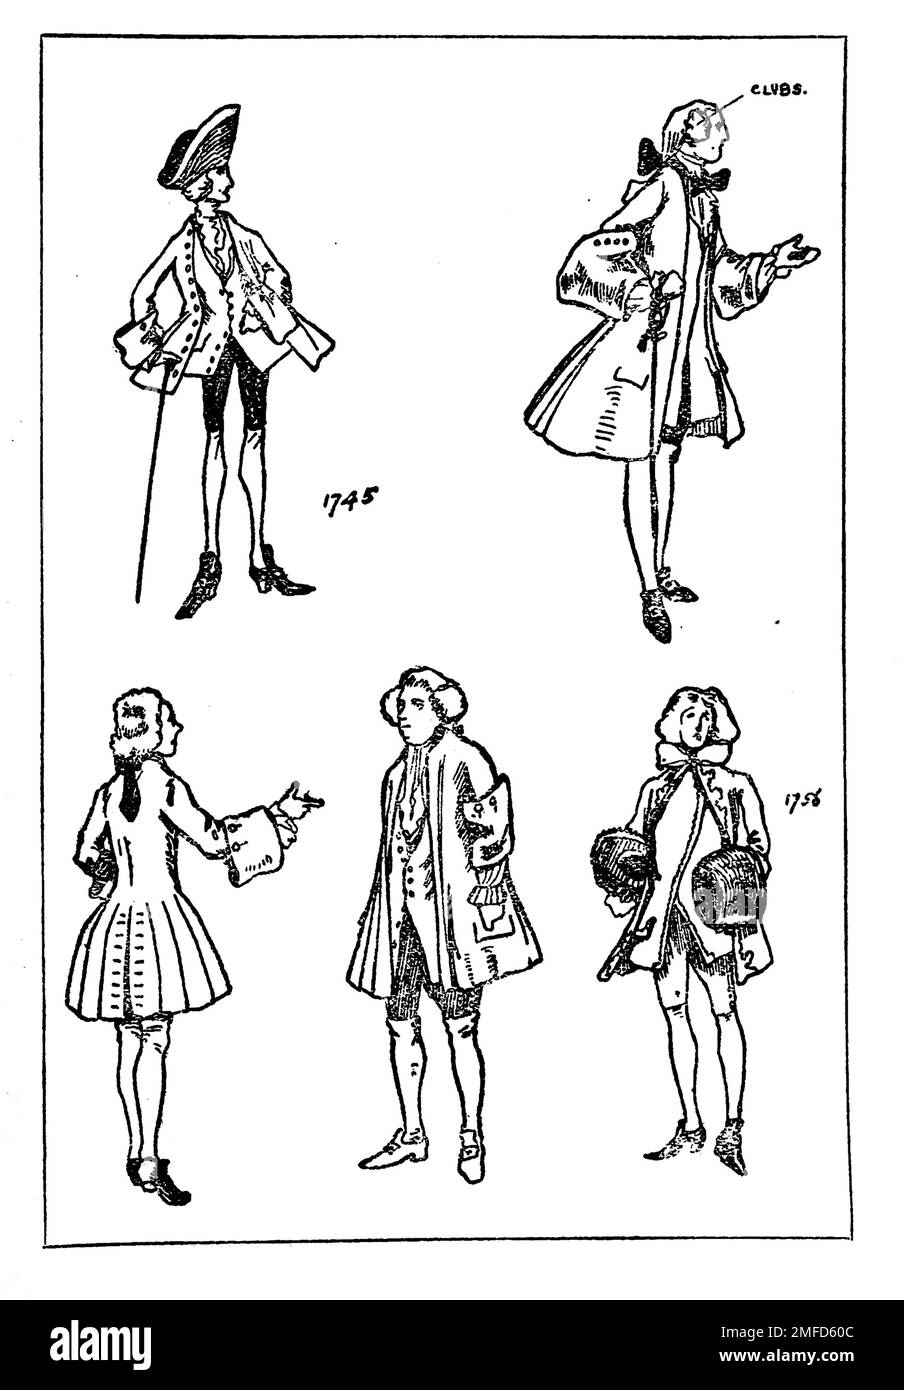 Strichzeichnung von Herrenbekleidung während der Herrschaft von George II aus dem Buch " English Costume " von Dion Clayton Calthrop, 1878-1937 Publikationsdatum 1907 Publisher London, A. & C. Black Stockfoto